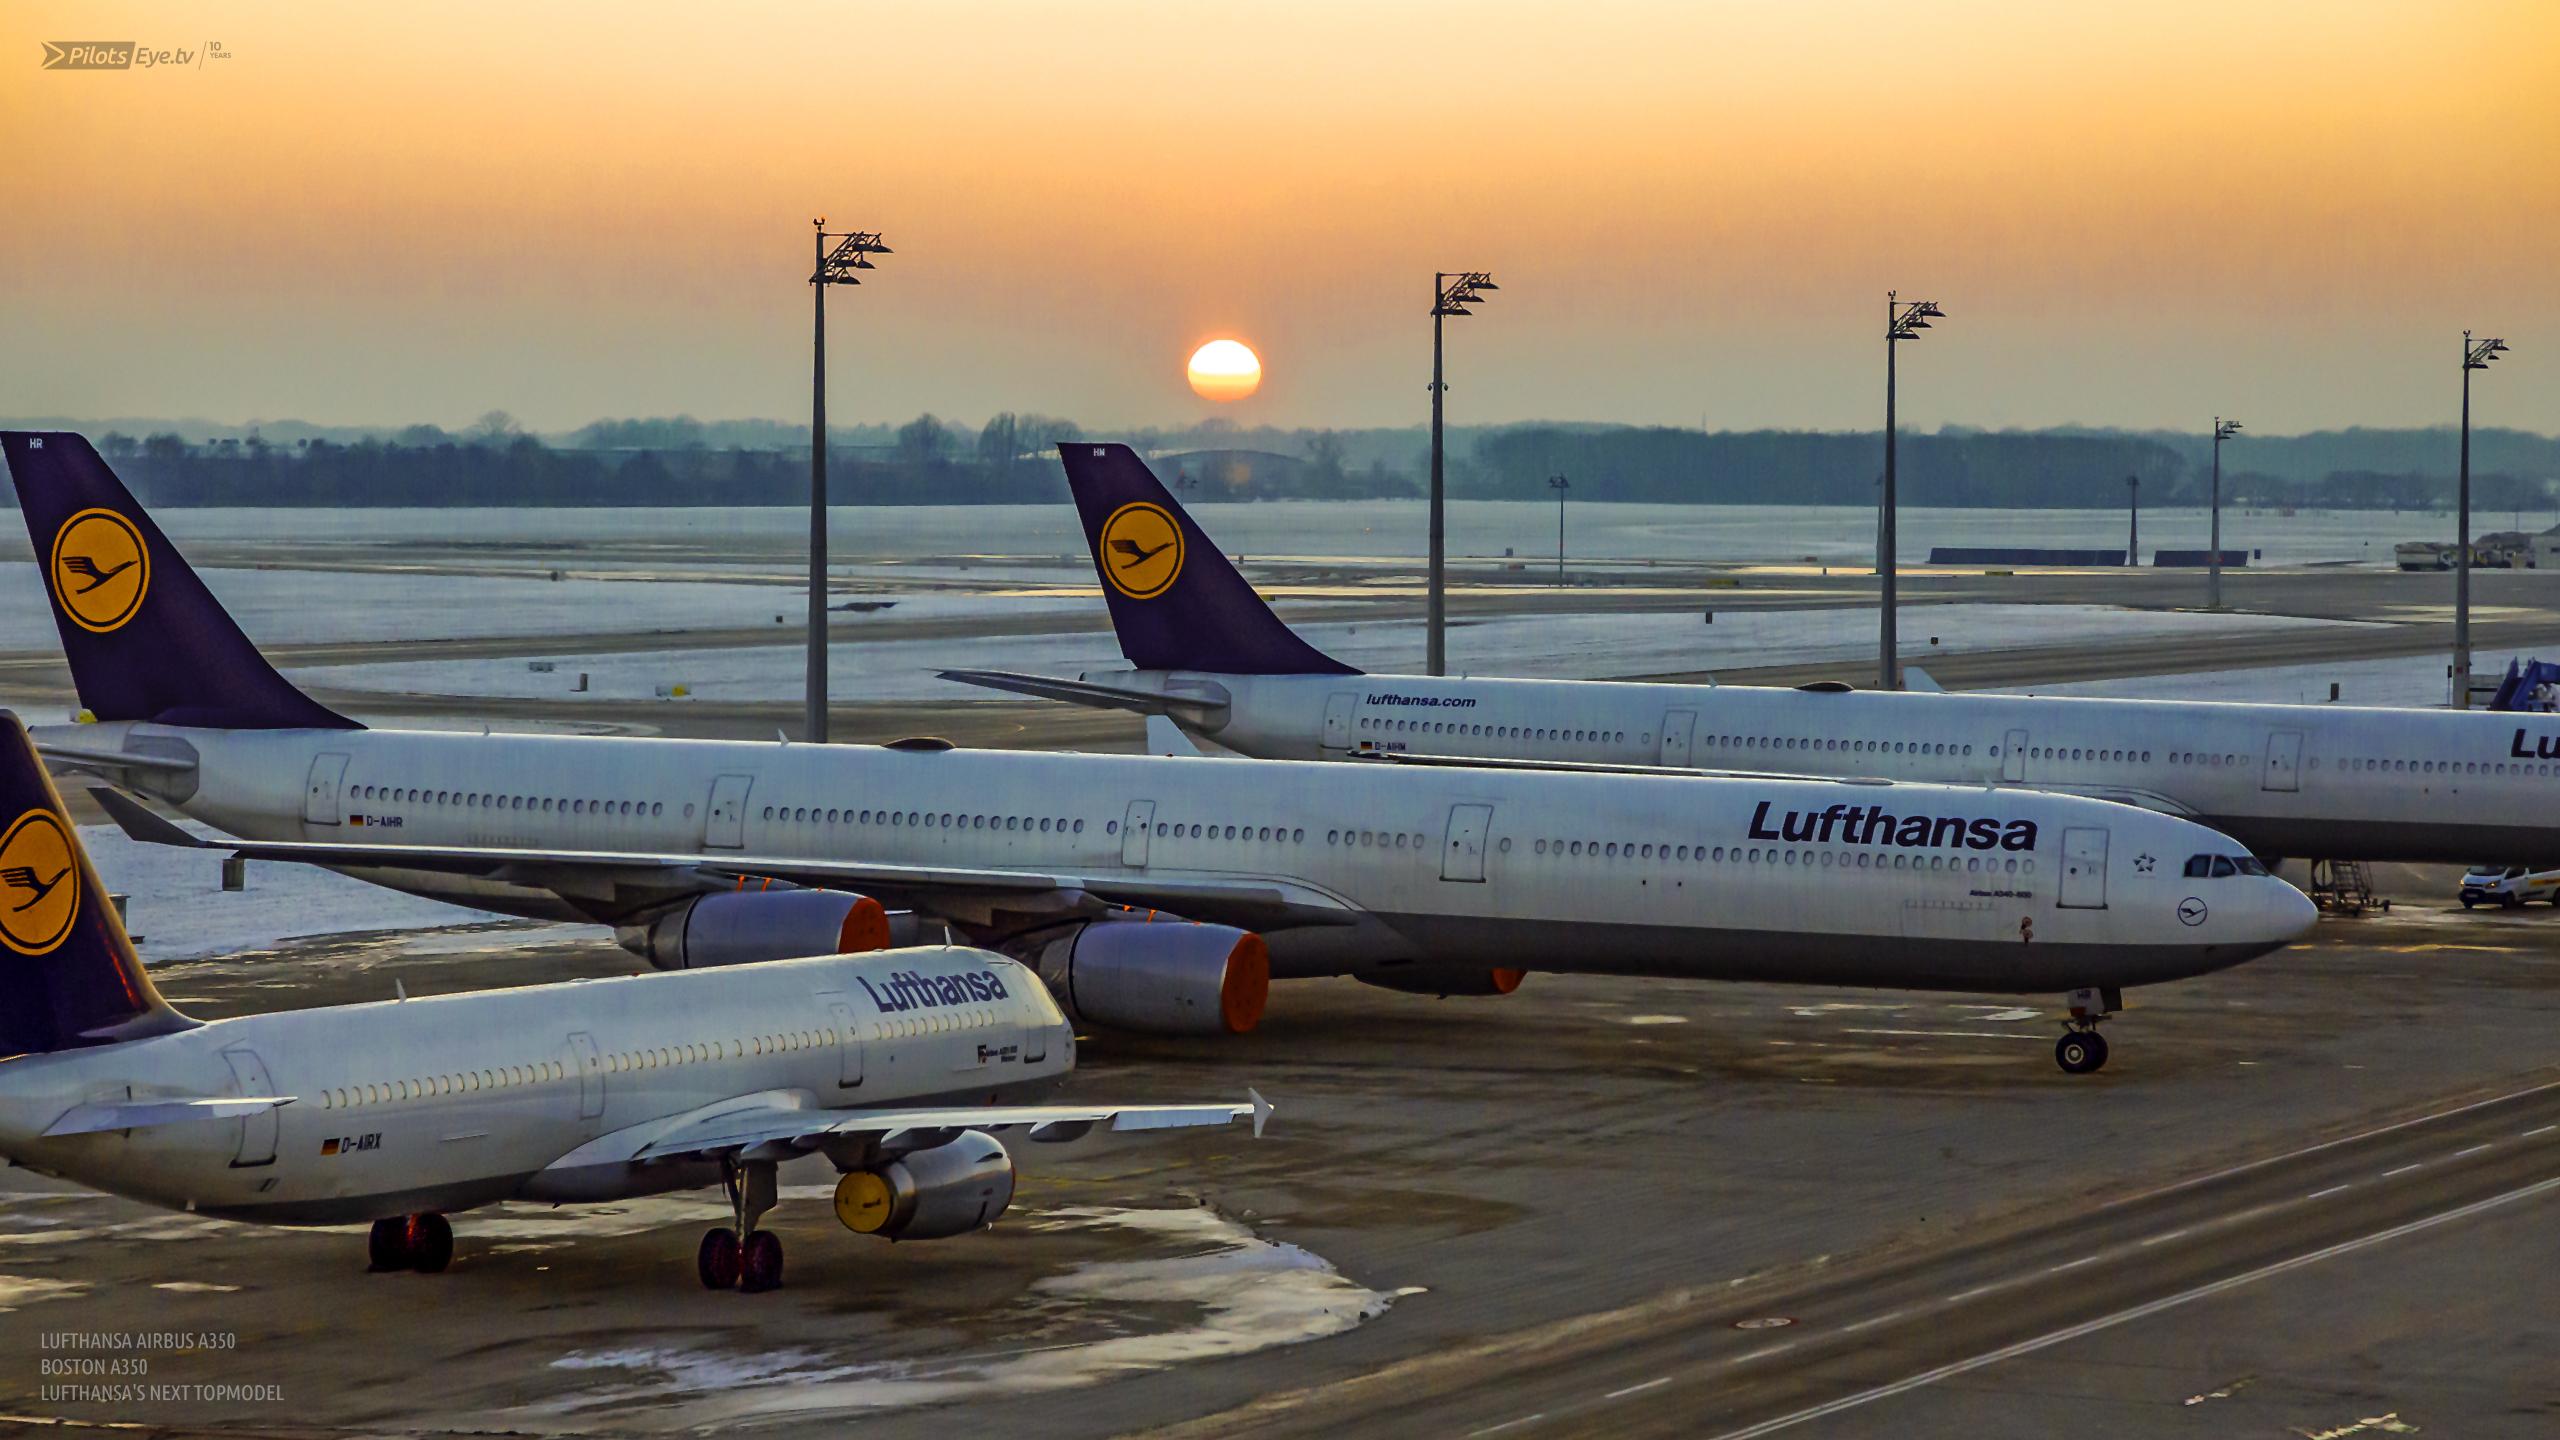 Lufthansa A380 Touch Down At Hamburg Airport A321